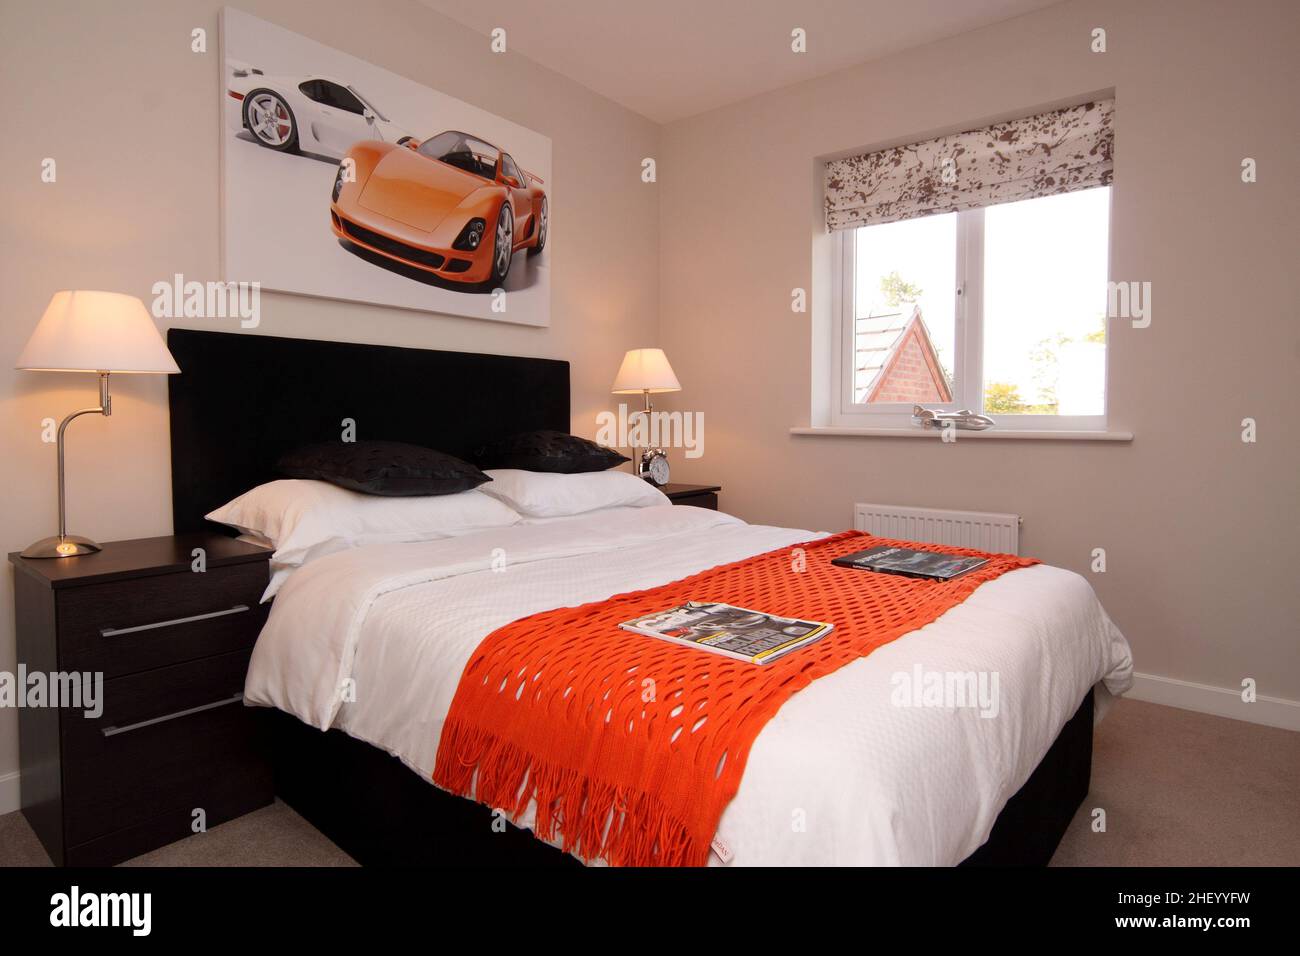 Habitación para niños, temática deportiva de motor de carreras, esquema de colores naranja negro, cama doble king size, luz lateral. Foto de stock